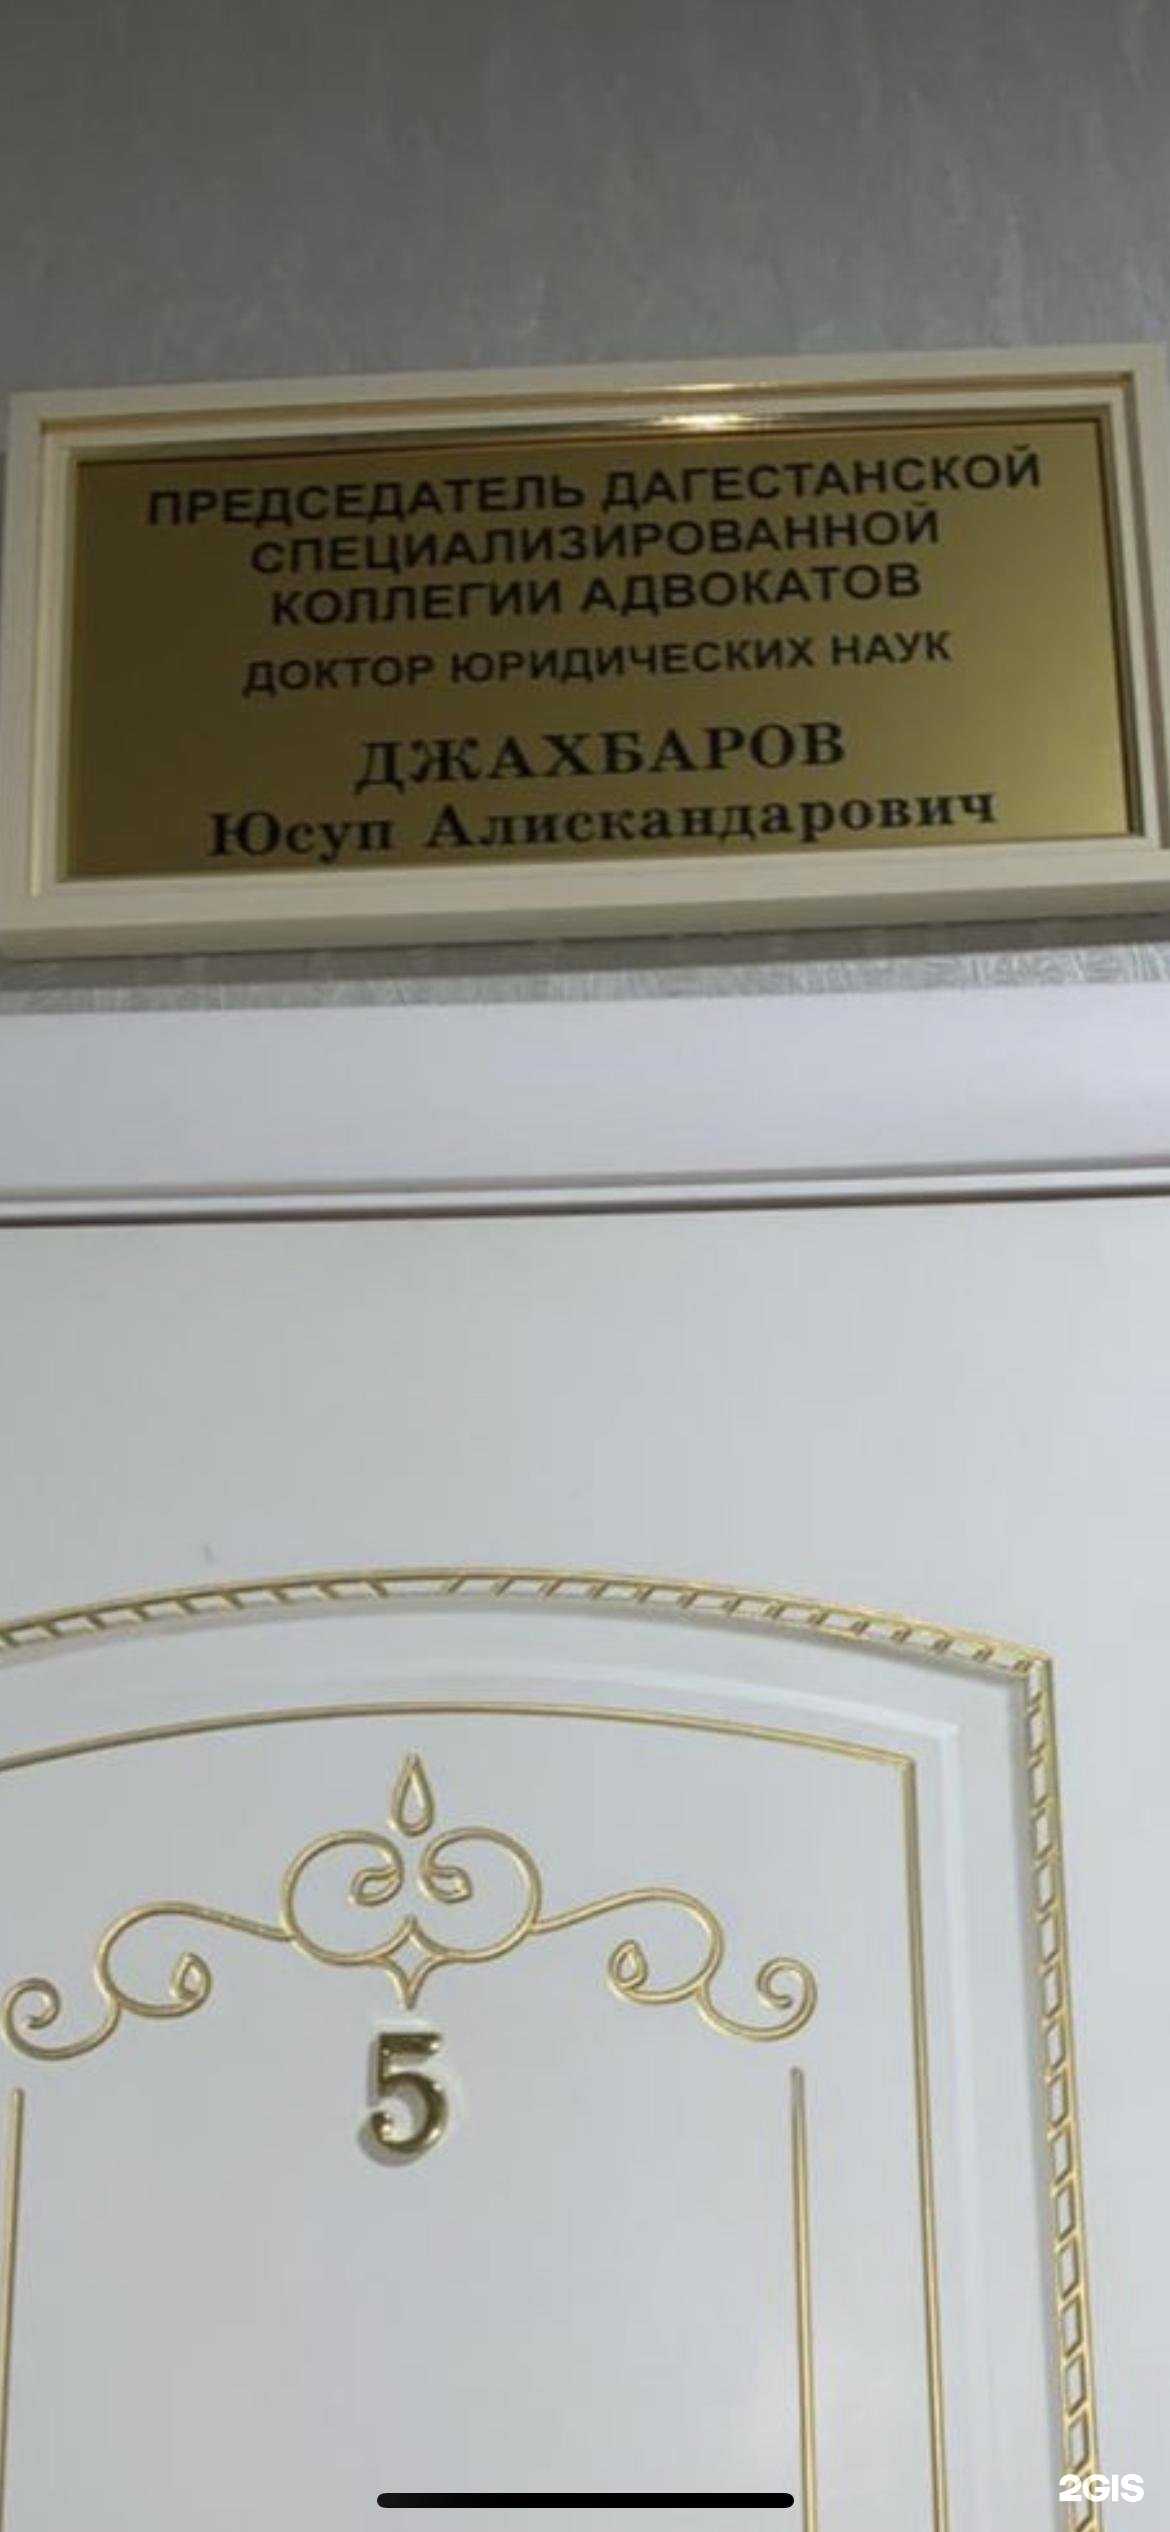 Дагестанская специализированная коллегия адвокатов фото 1